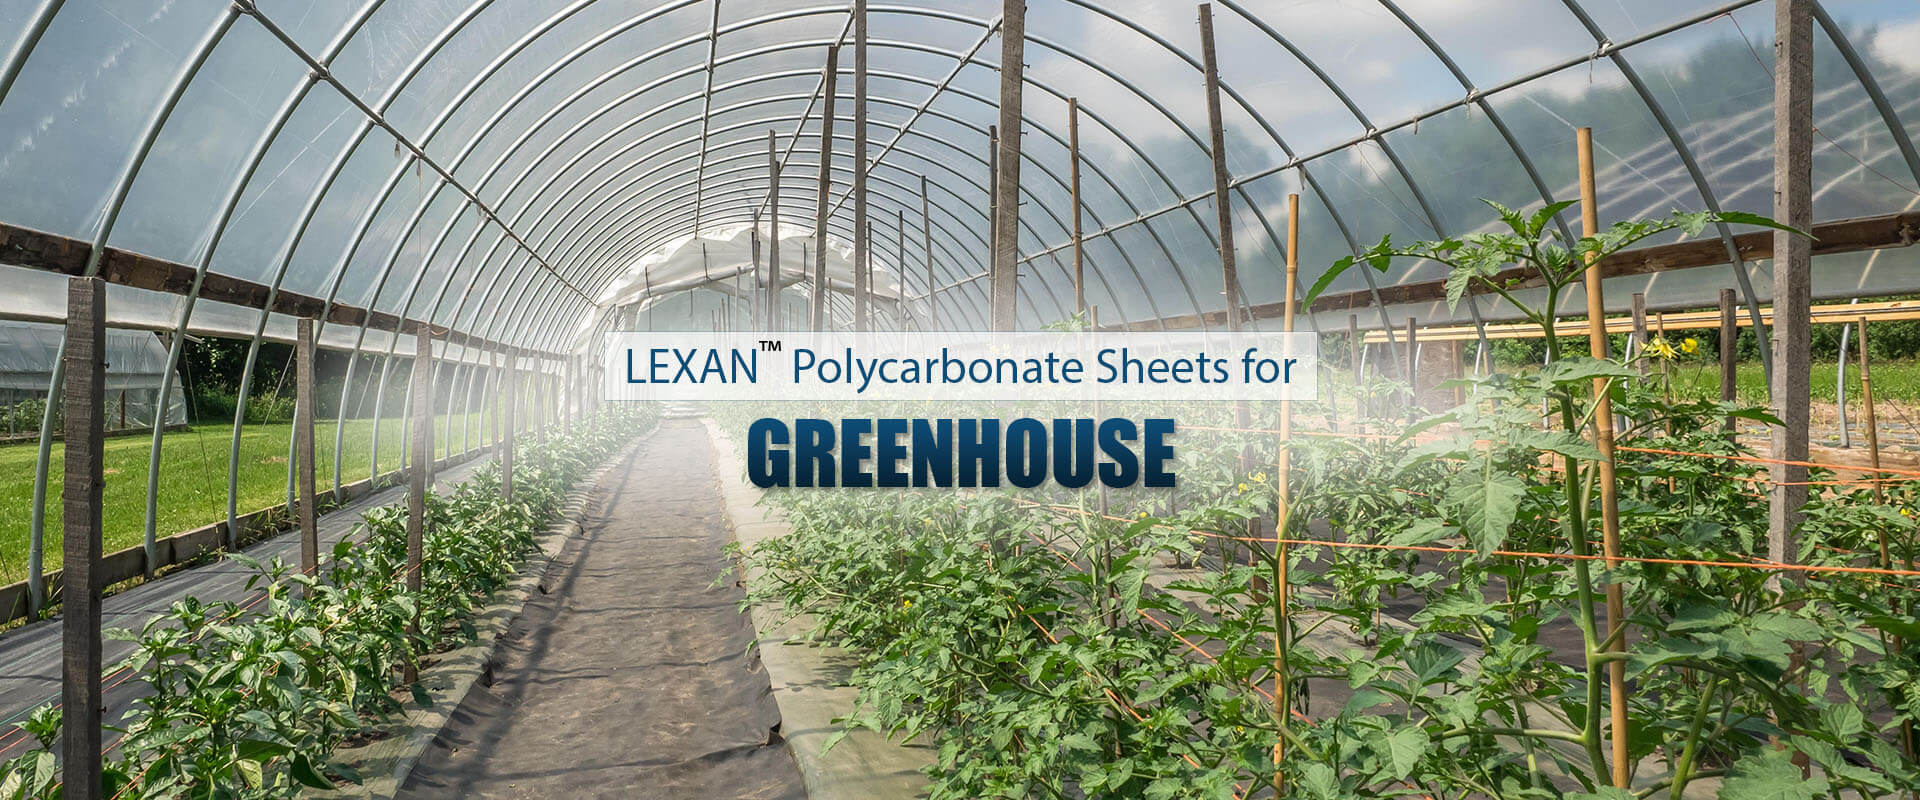 LEXAN™ Polycarbonate Sheets